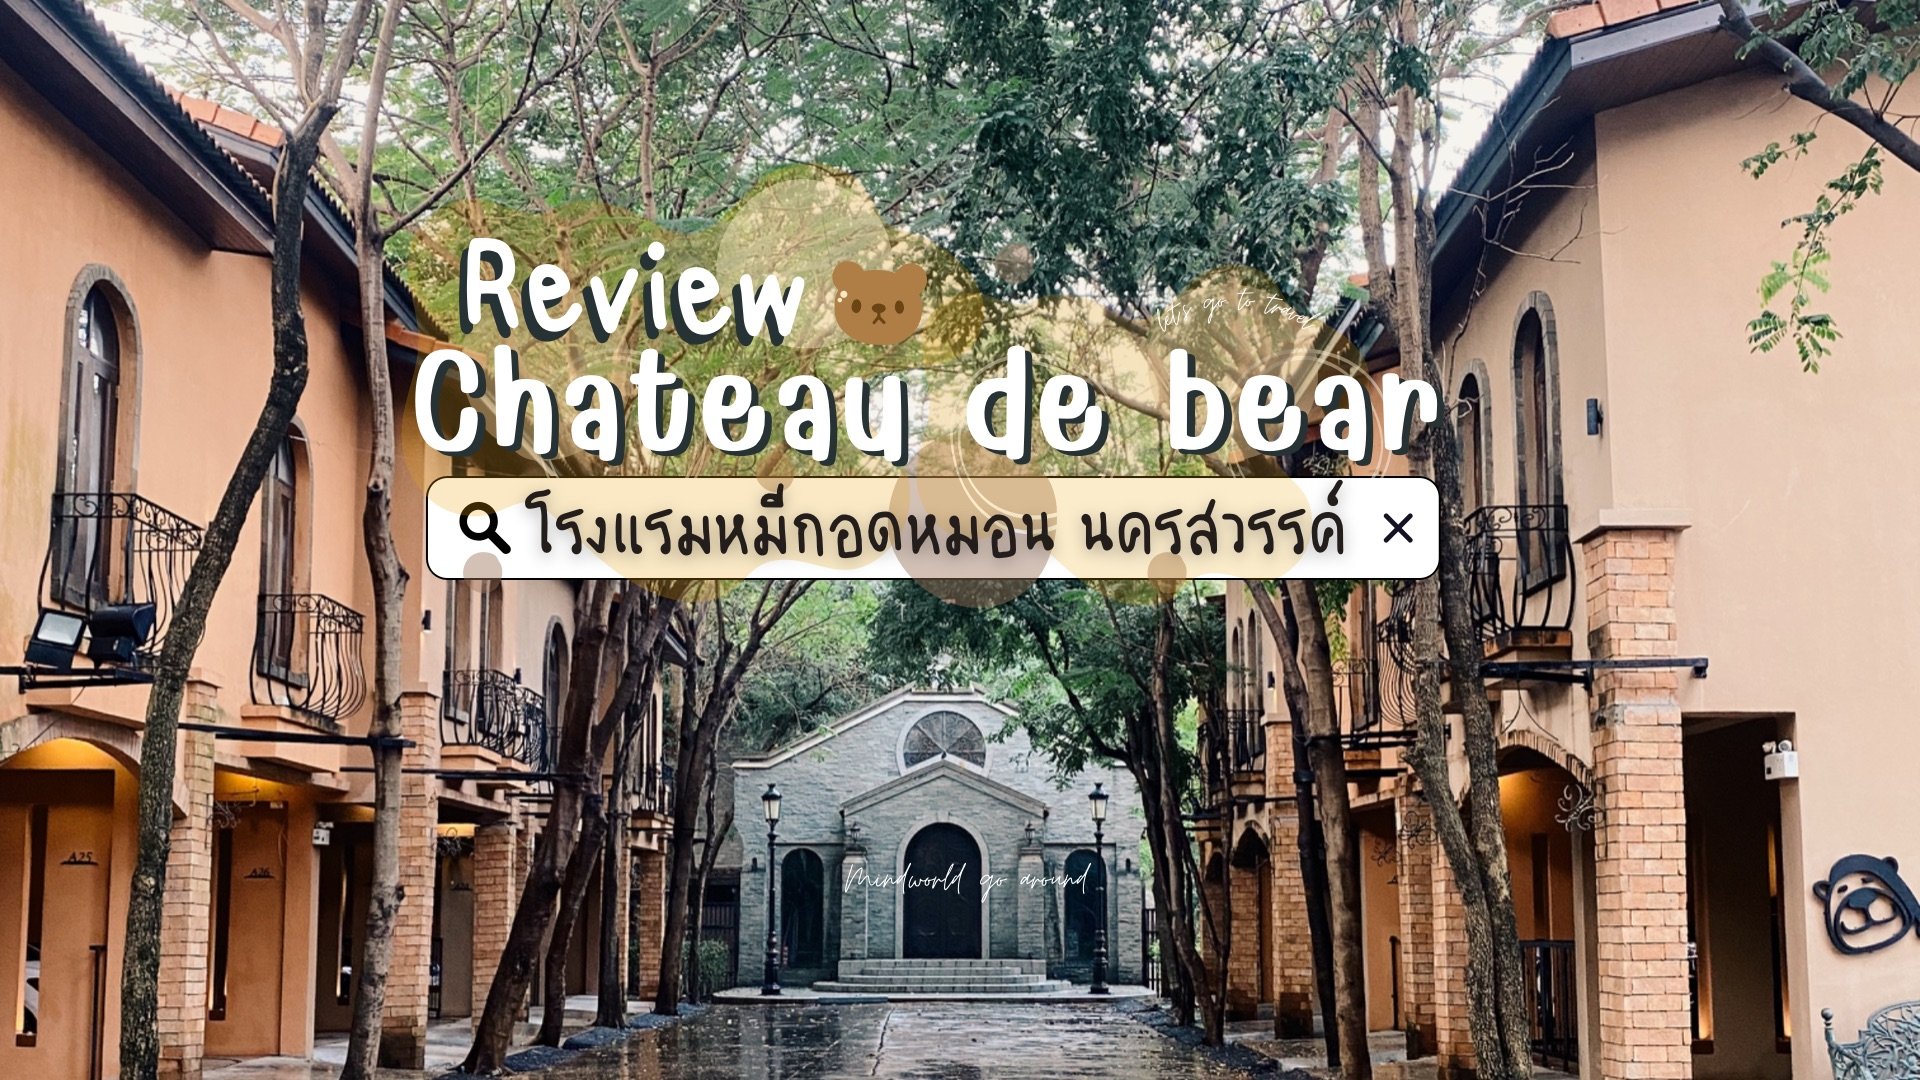 รีวิว Chateau de bear โรงแรมหมีกอดหมอน ที่พักสุดว้าวตัวเมืองนครสวรรค์